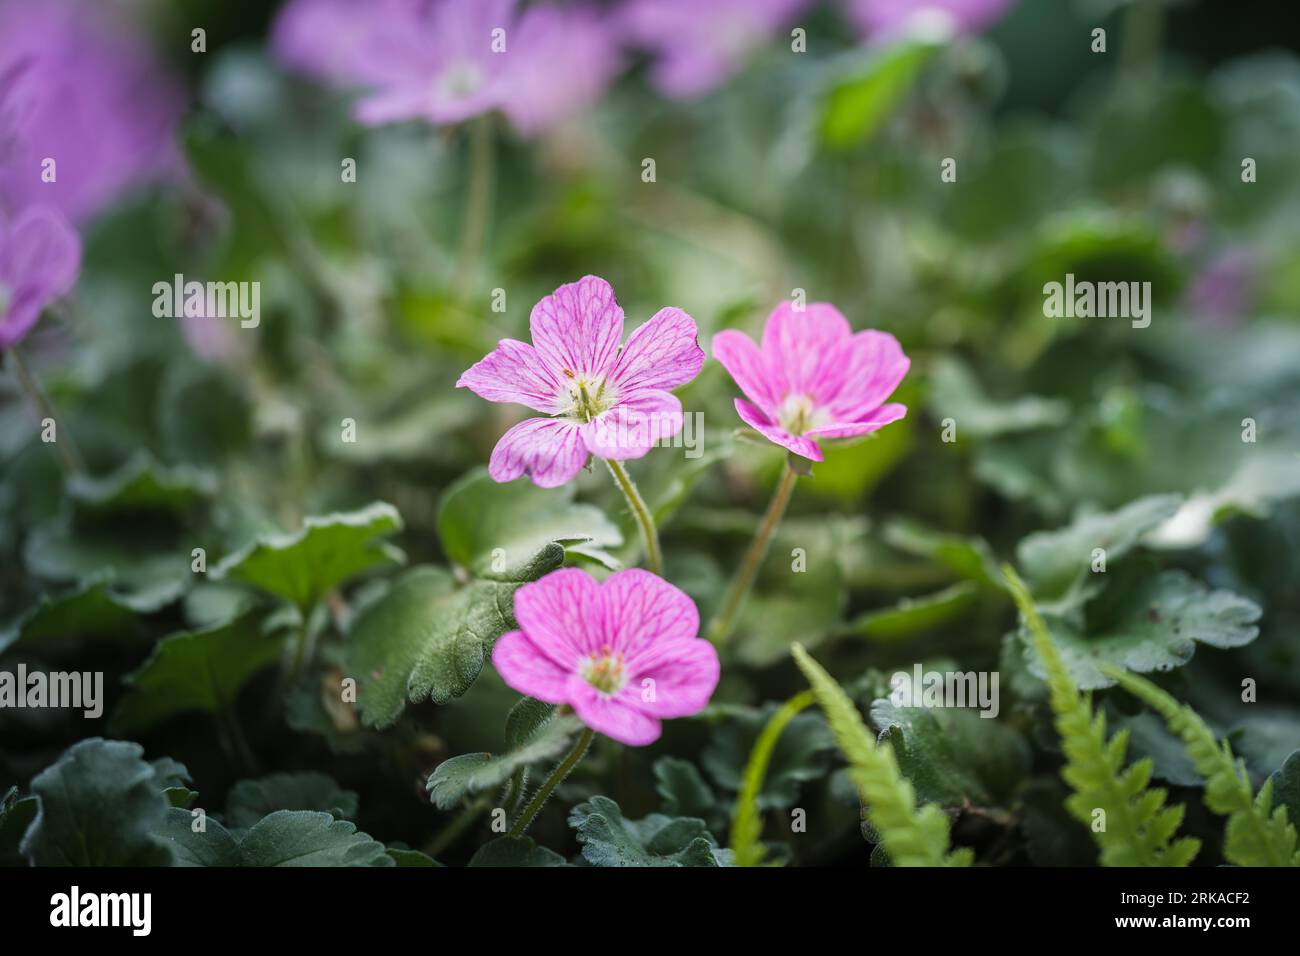 Bellissimo macro dei piccoli fiori rosa della pianta di Erodium. Erodium è un genere di piante da fiore della famiglia botanica Geraniaceae, questo è il Foto Stock